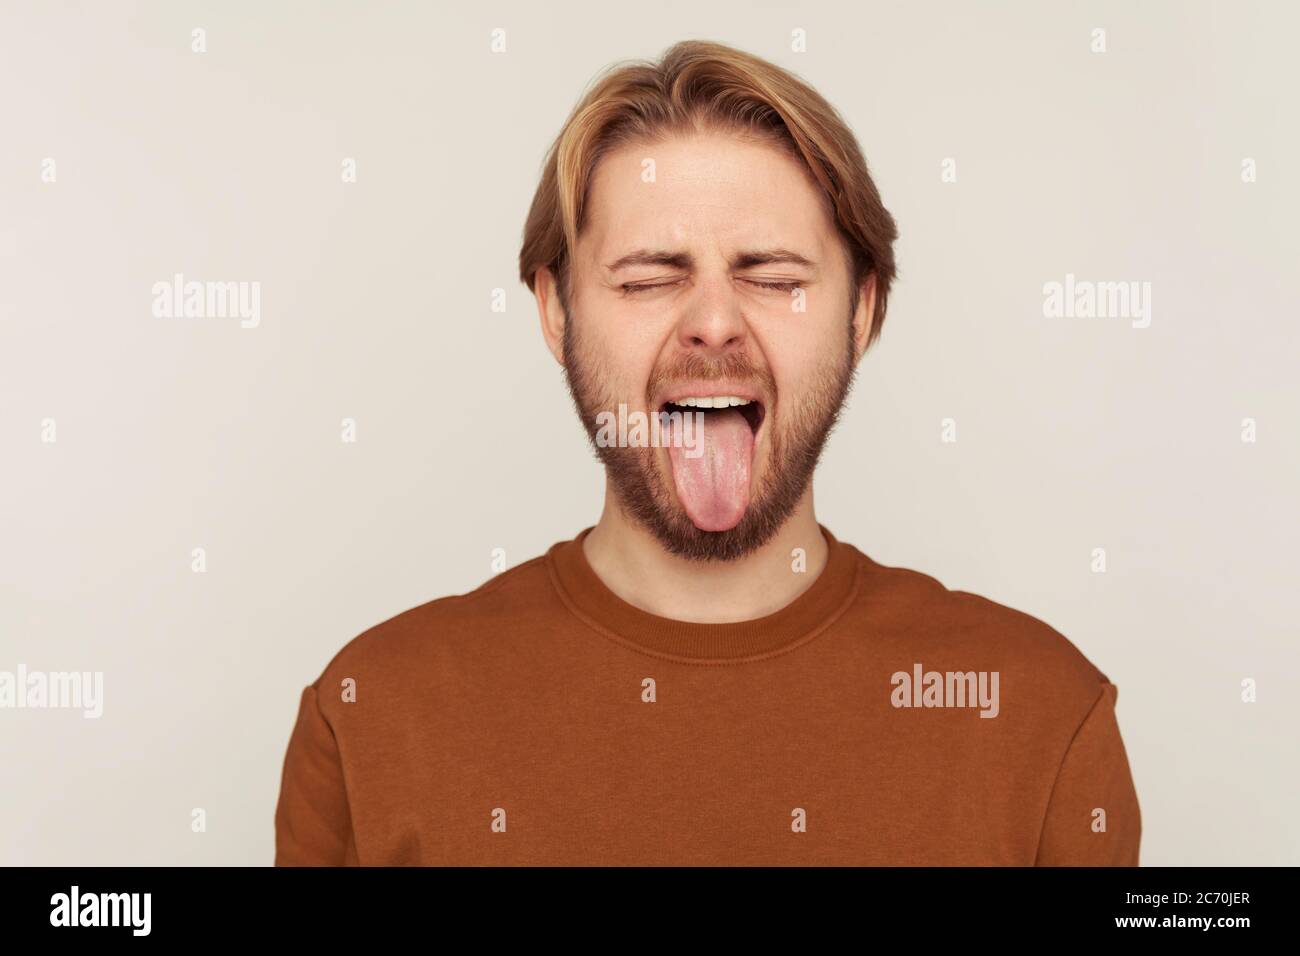 Portrait von lustigen optimistischen Mann mit Bart tragen Sweatshirt Verhalten kindisch frech, zeigt Zunge aus und macht Gesichter, ungehorsam goofy grima Stockfoto